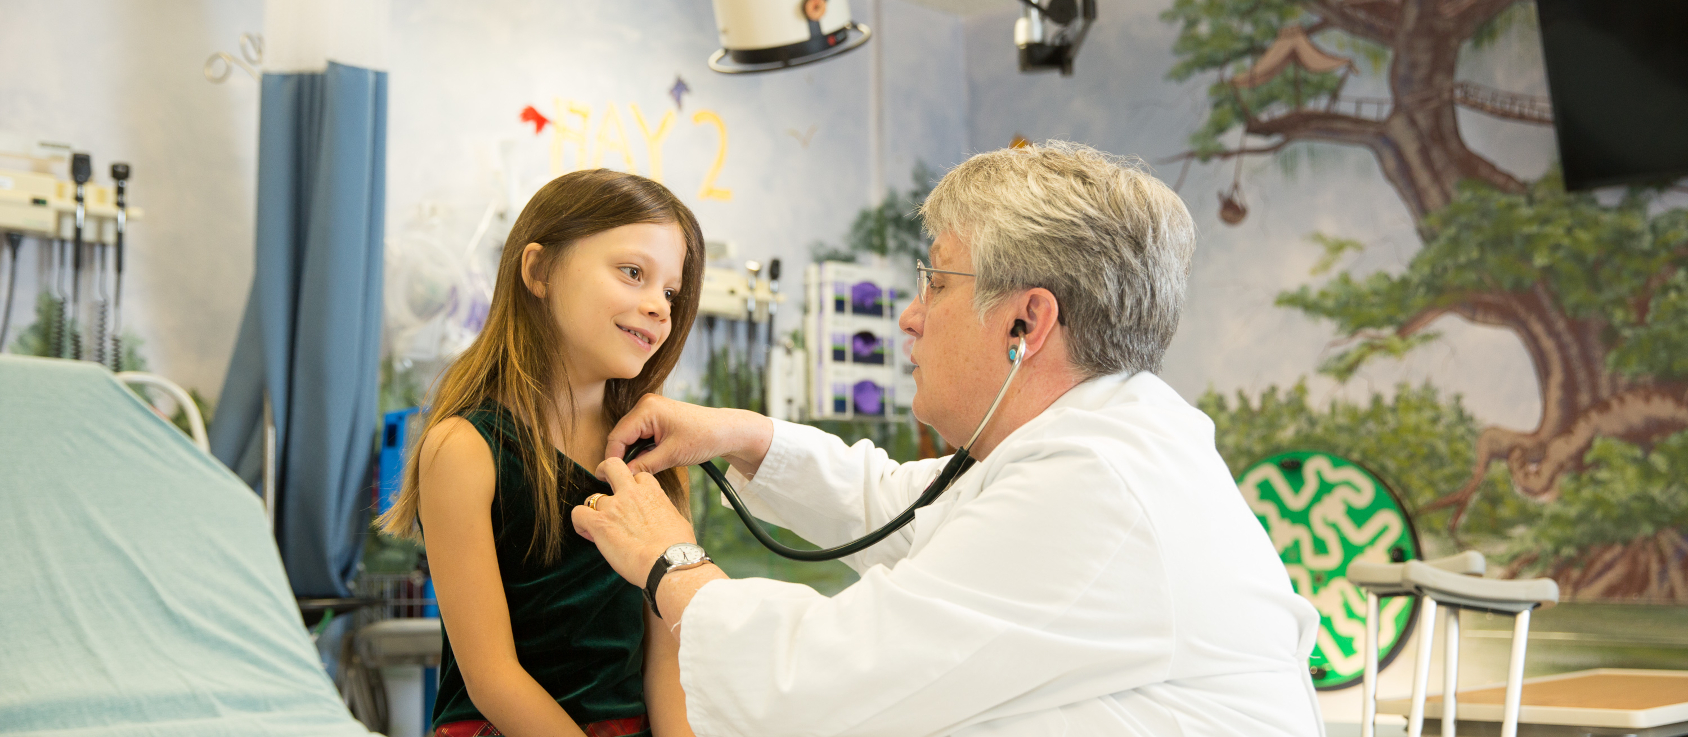 طبيب أطفال يفحص المريض بسماعة طبية